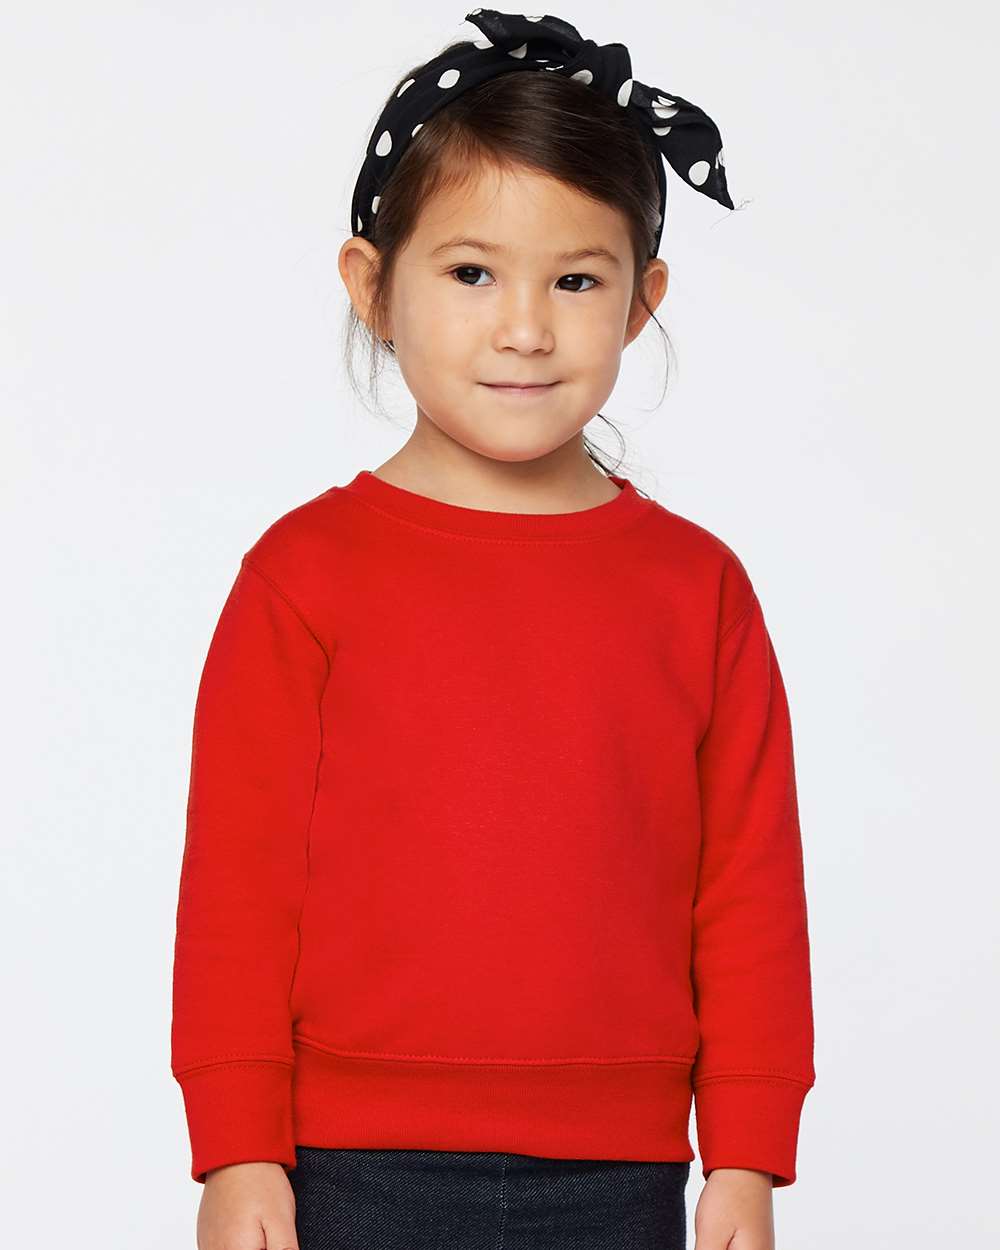 Toddler Fleece Crewneck Sweatshirt - Rabbit Skins 3317